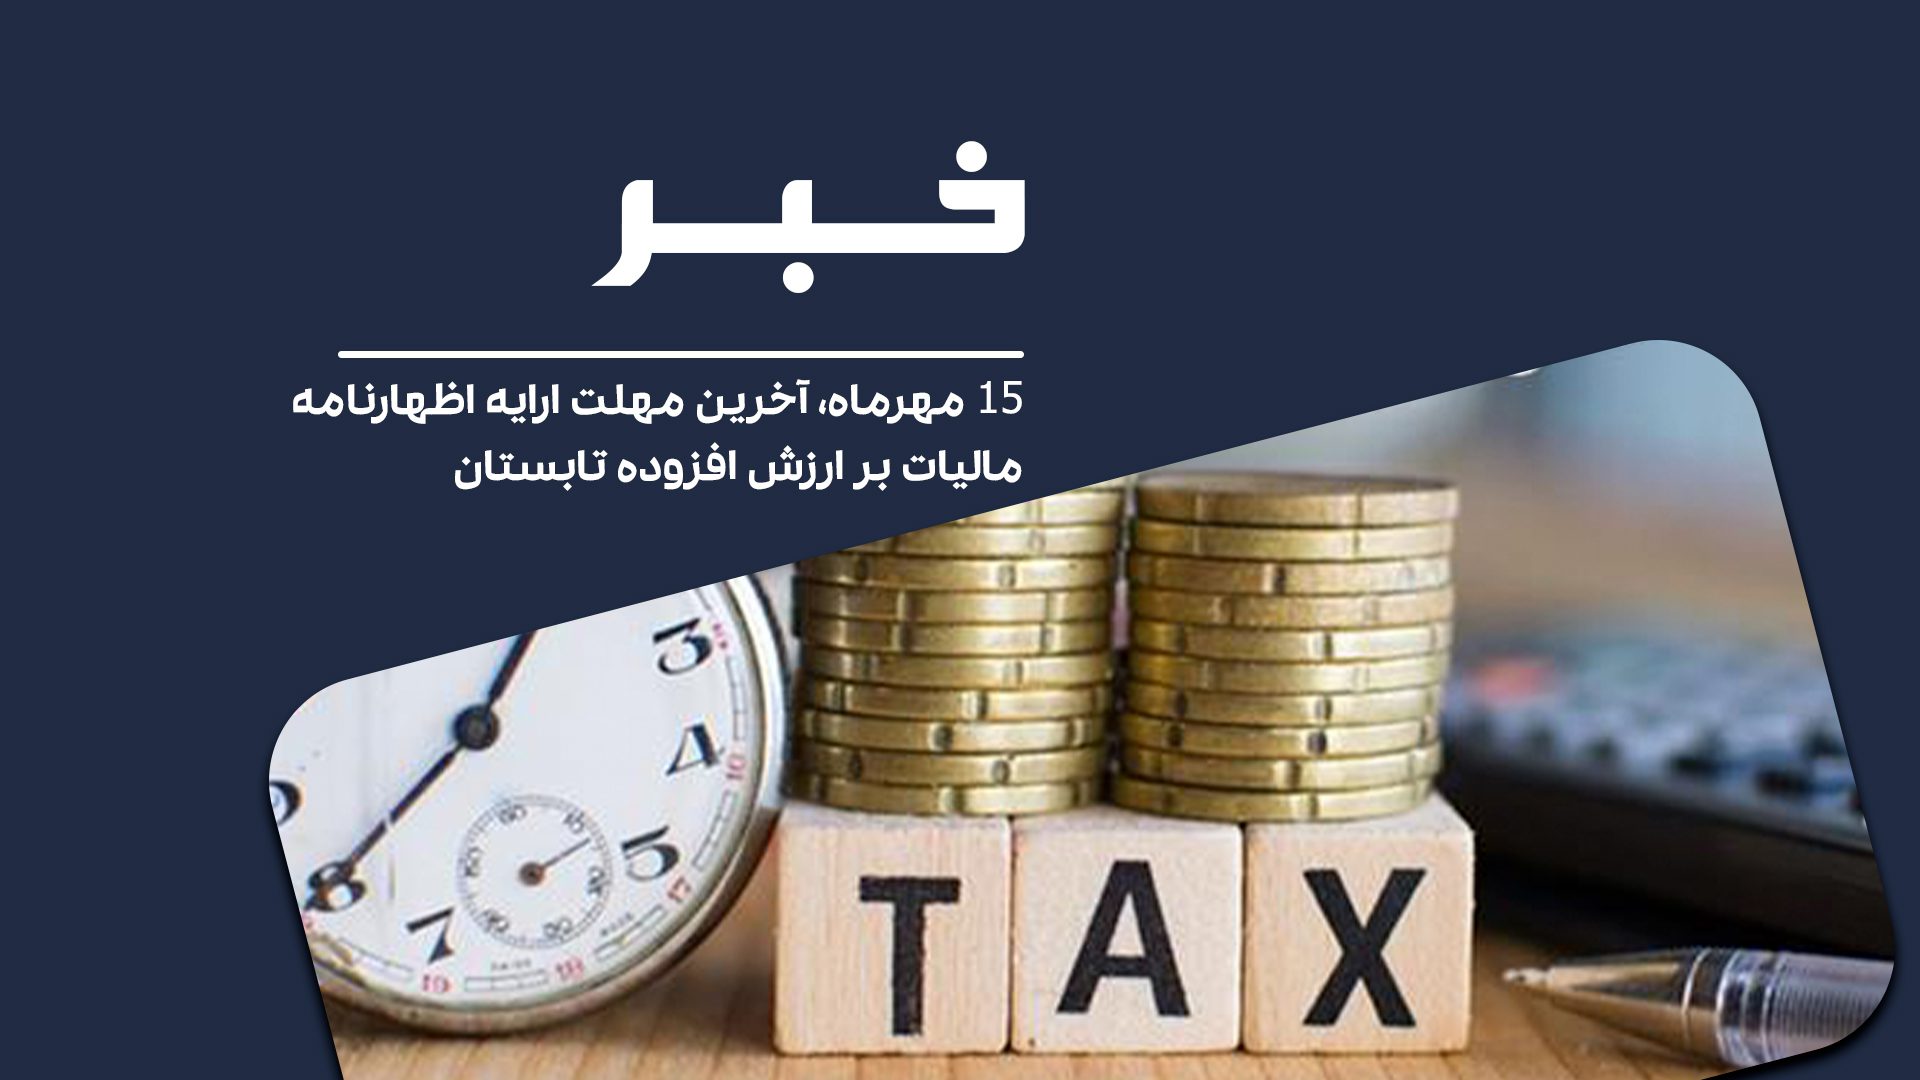 15 مهرماه، آخرین مهلت ارایه اظهارنامه مالیات بر ارزش افزوده تابستان